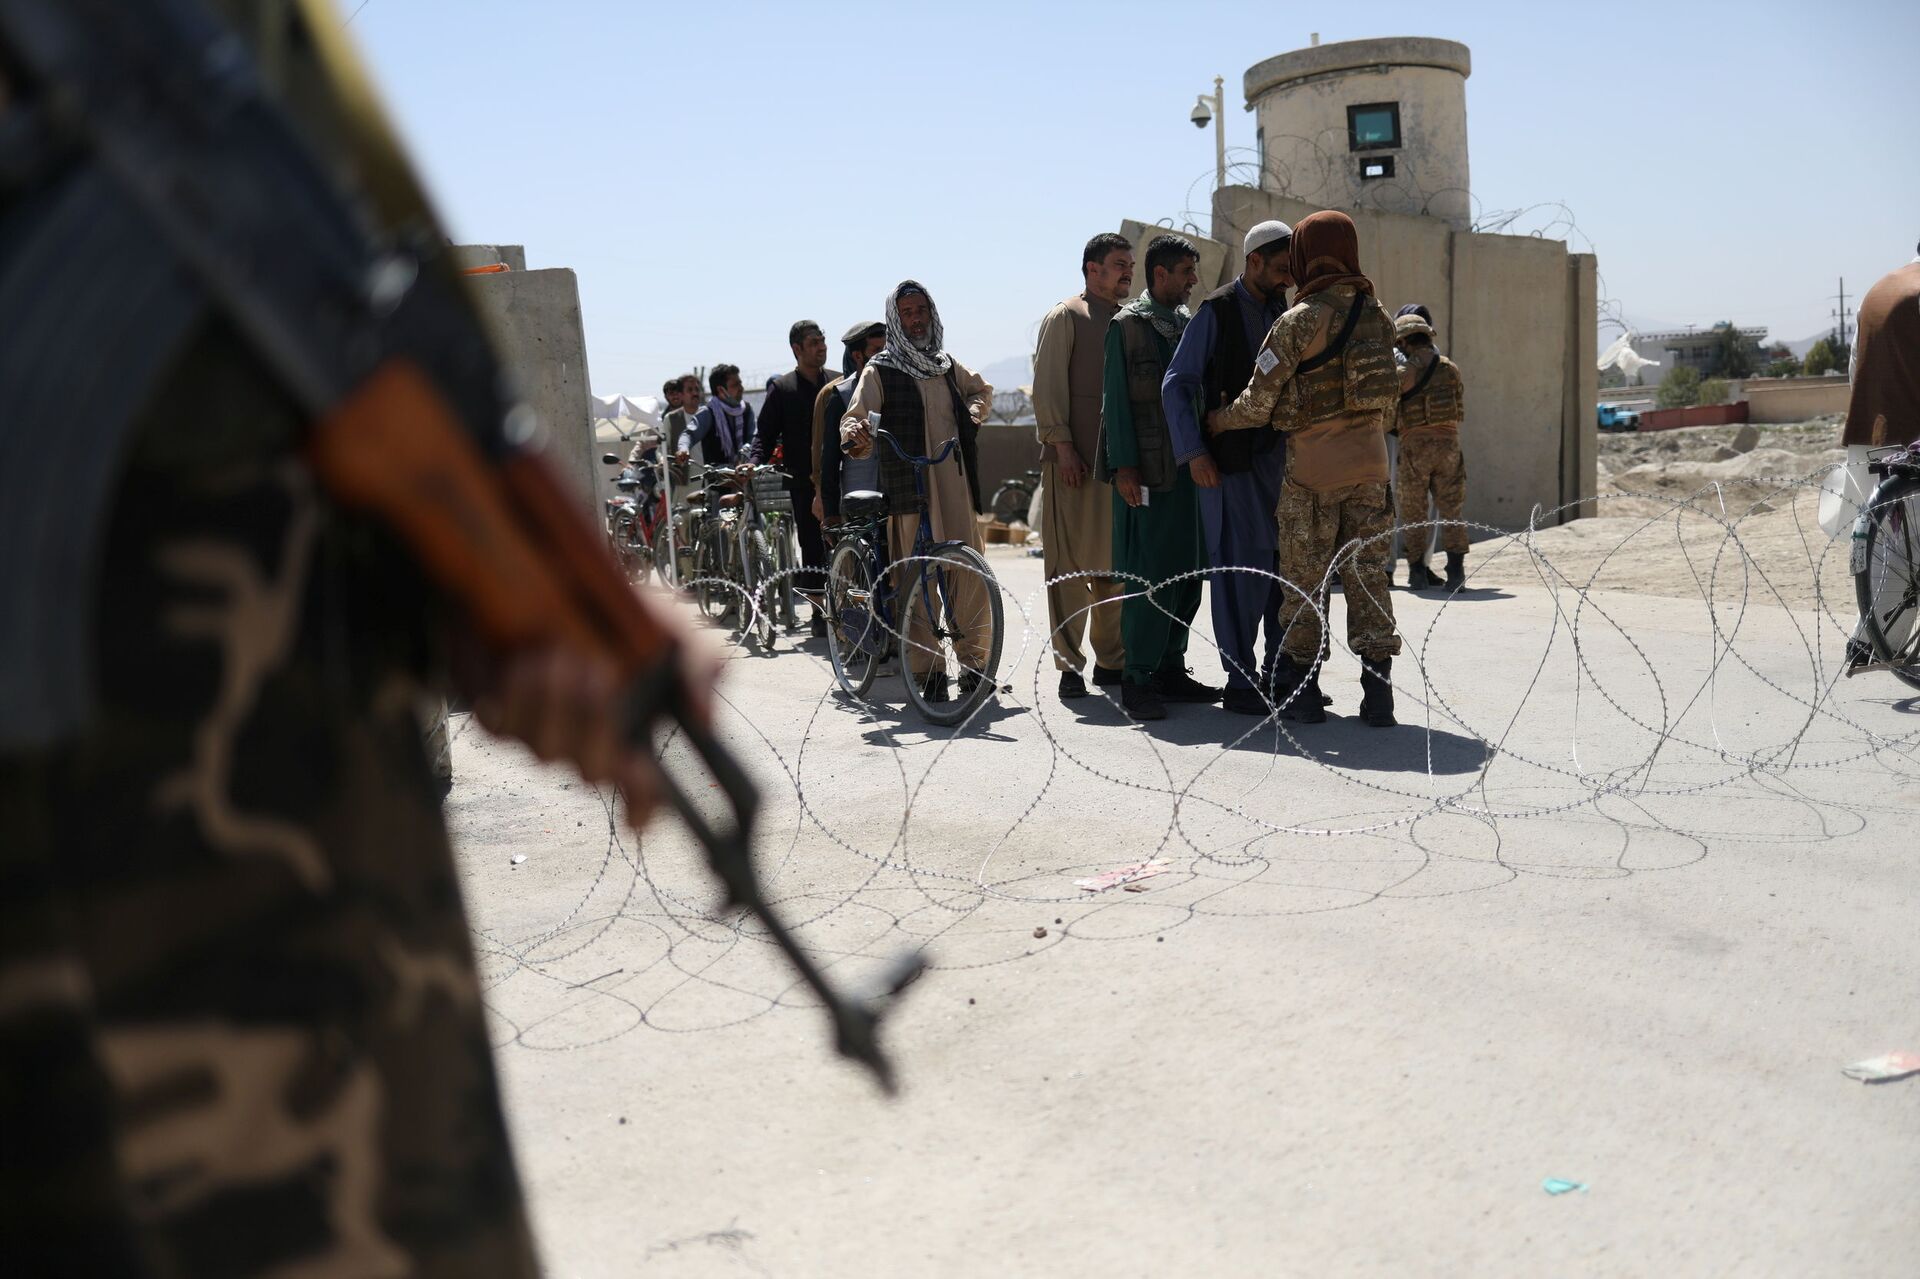 Taliban members pat down workers leaving the military airfield in Kabul, Afghanistan, September 5, 2021 - Sputnik International, 1920, 07.09.2021